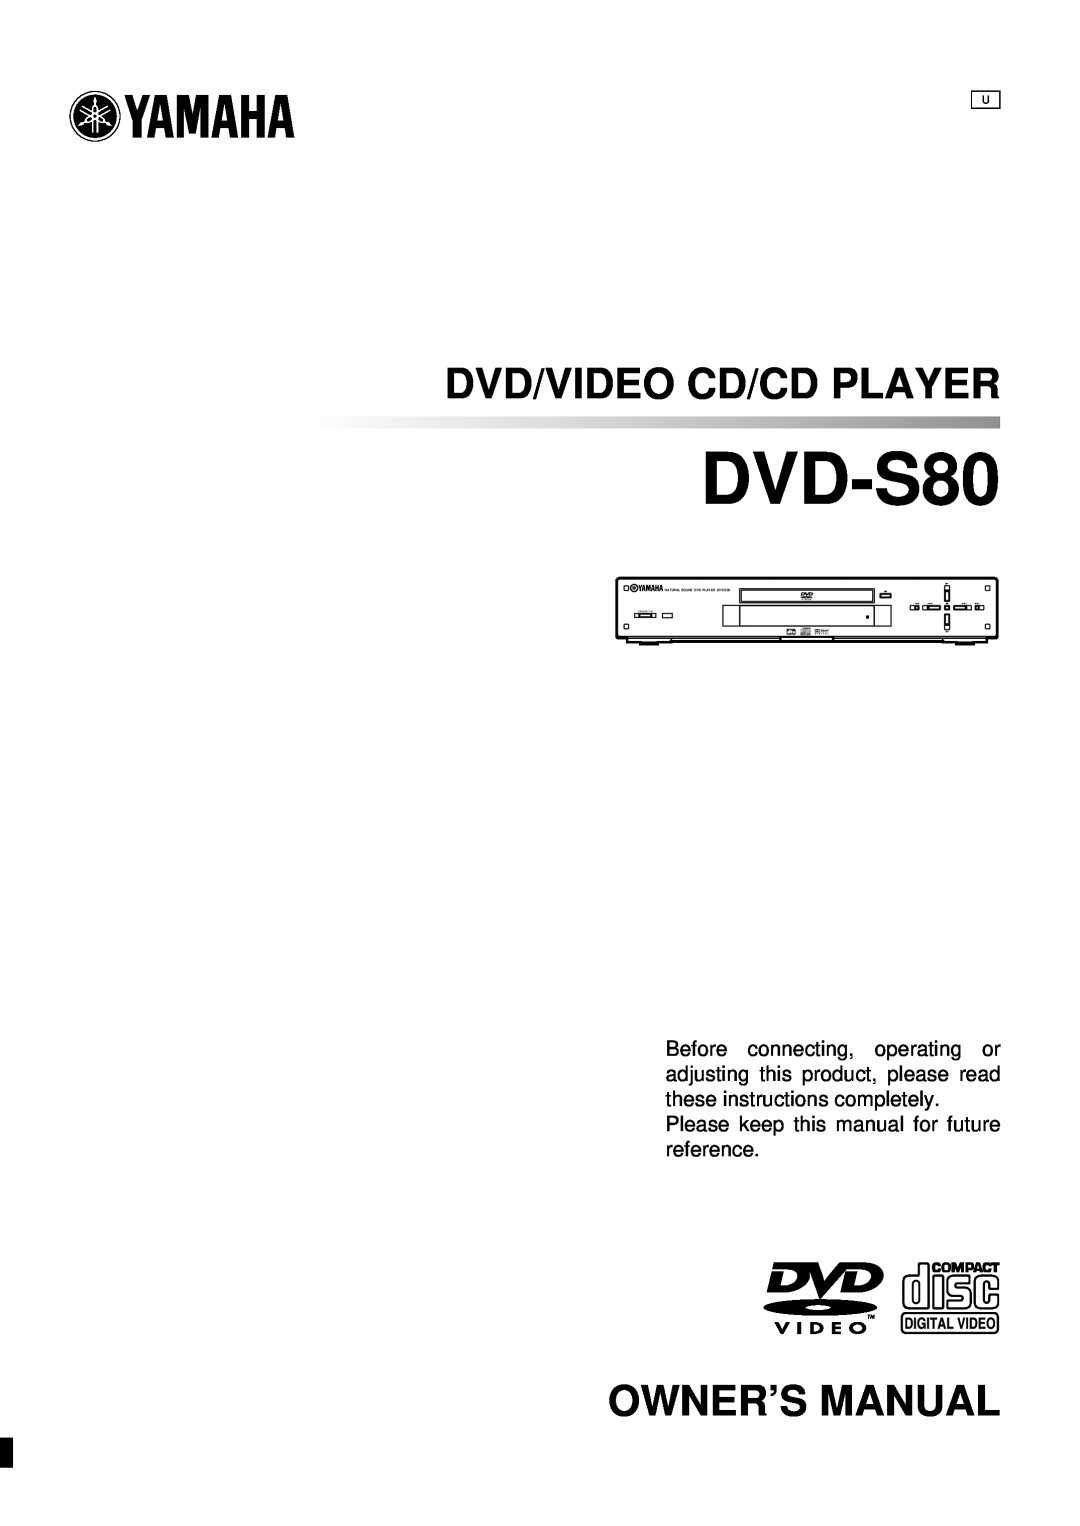 Yamaha AVX-S80 owner manual Dvd/Video Cd/Cd Player, Owner’S Manual, NATURAL SOUND DVD PLAYER DVD-S80, Standby/On 